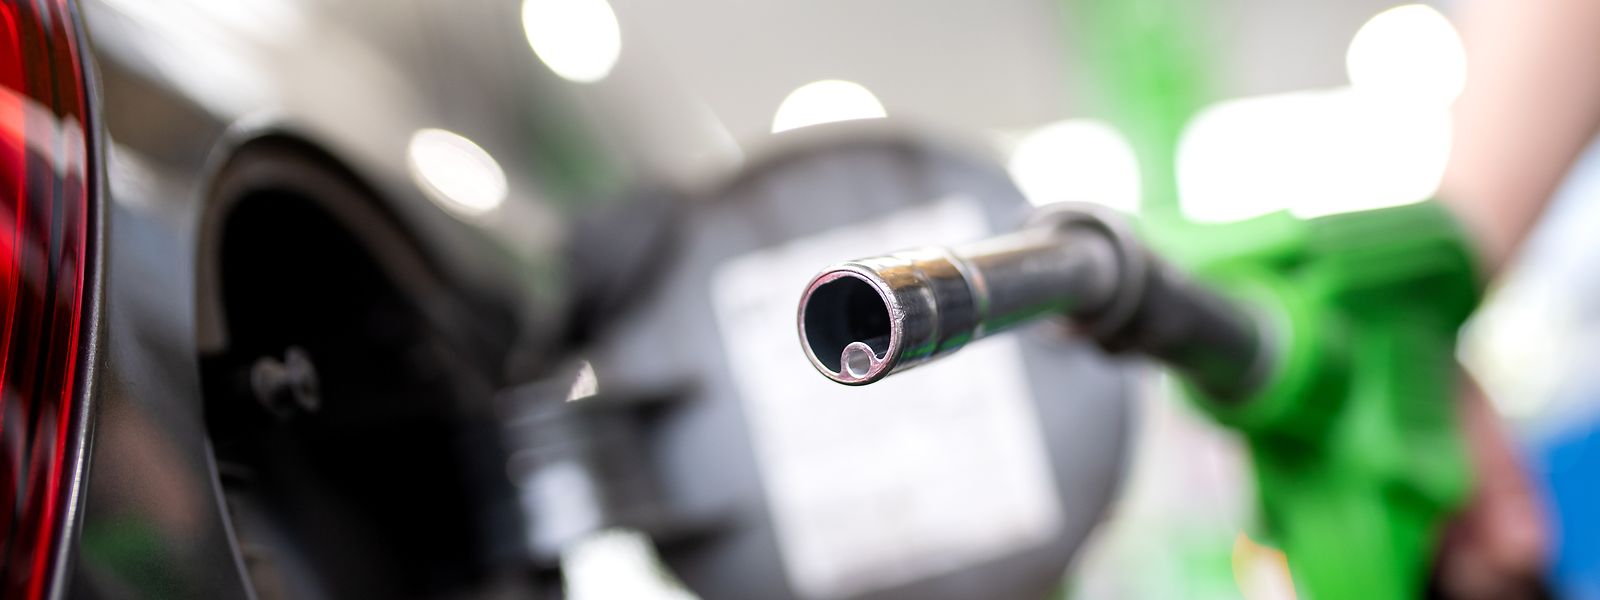 Diesel, Heizöl und 98er-Benzin bleiben unverändert im Preis.